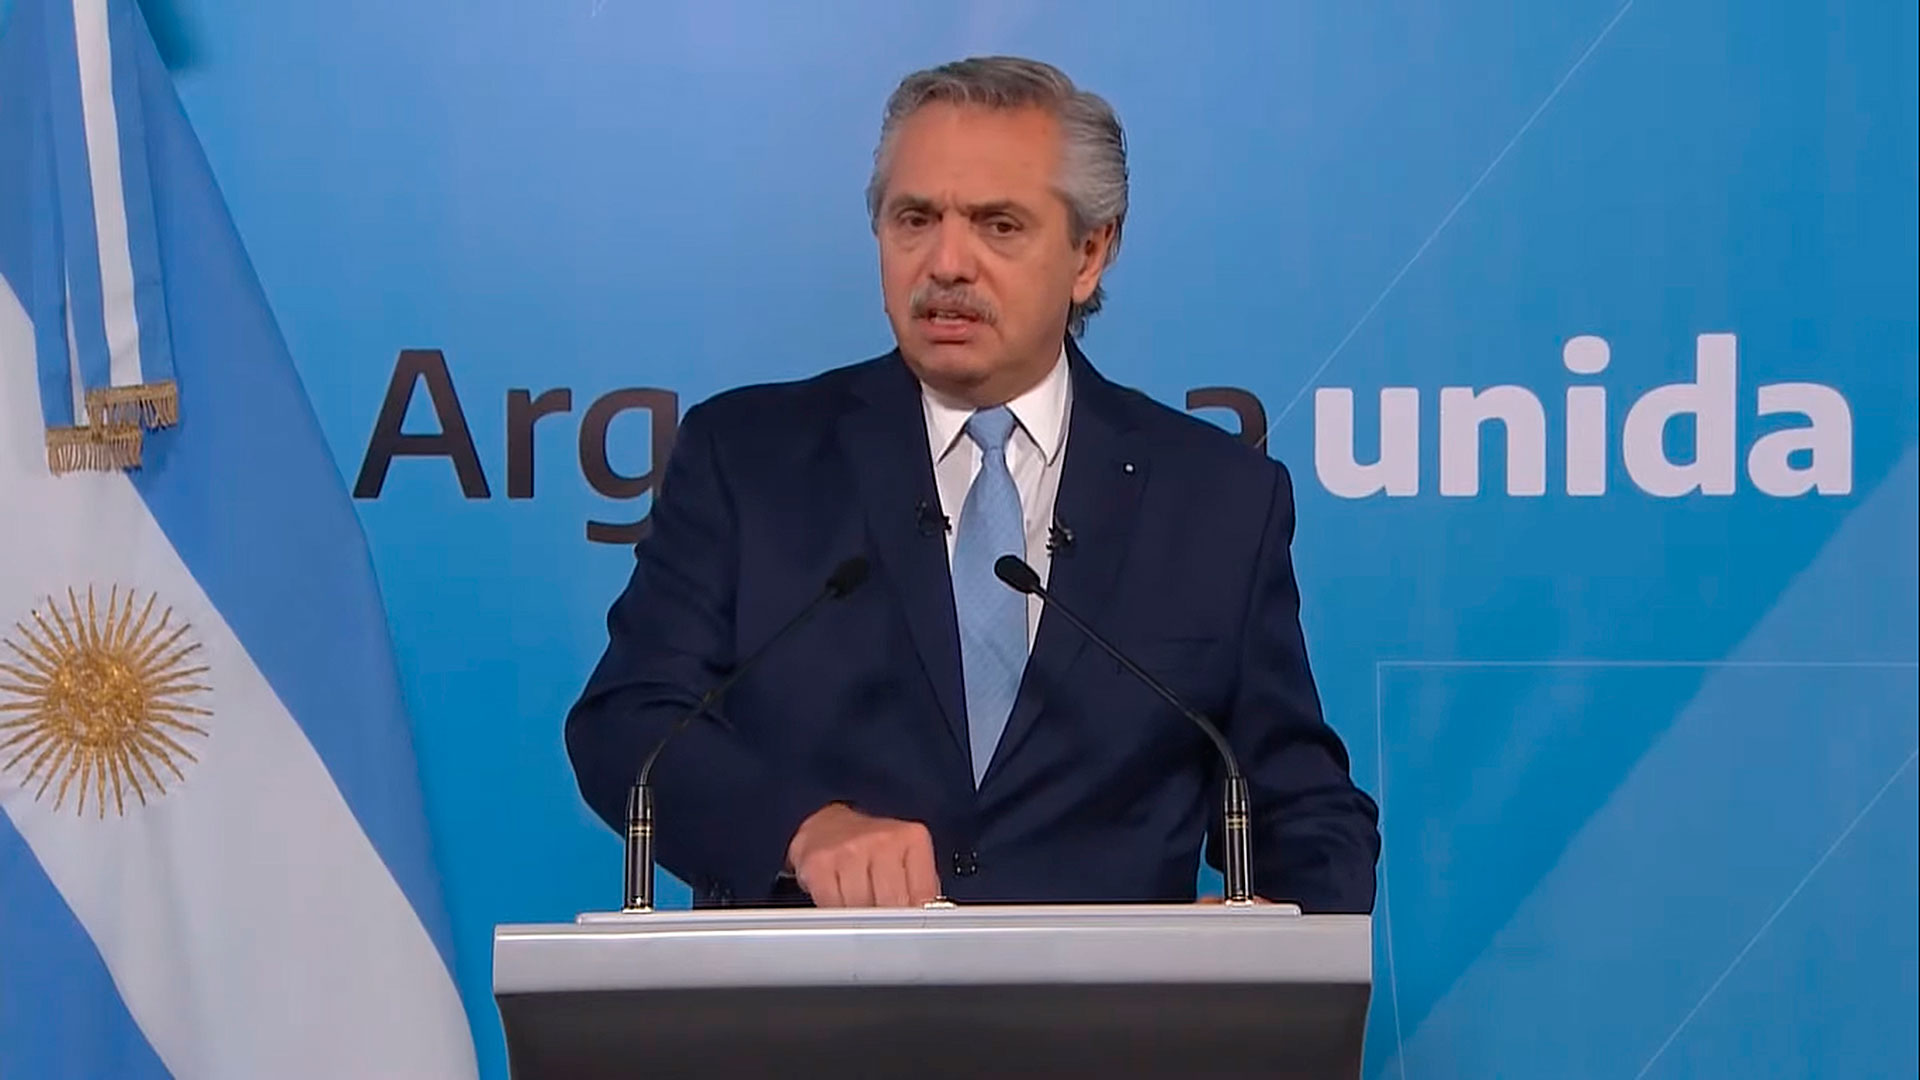  El presidente Alberto Fernández durante su mensaje grabado el 14 de noviembre